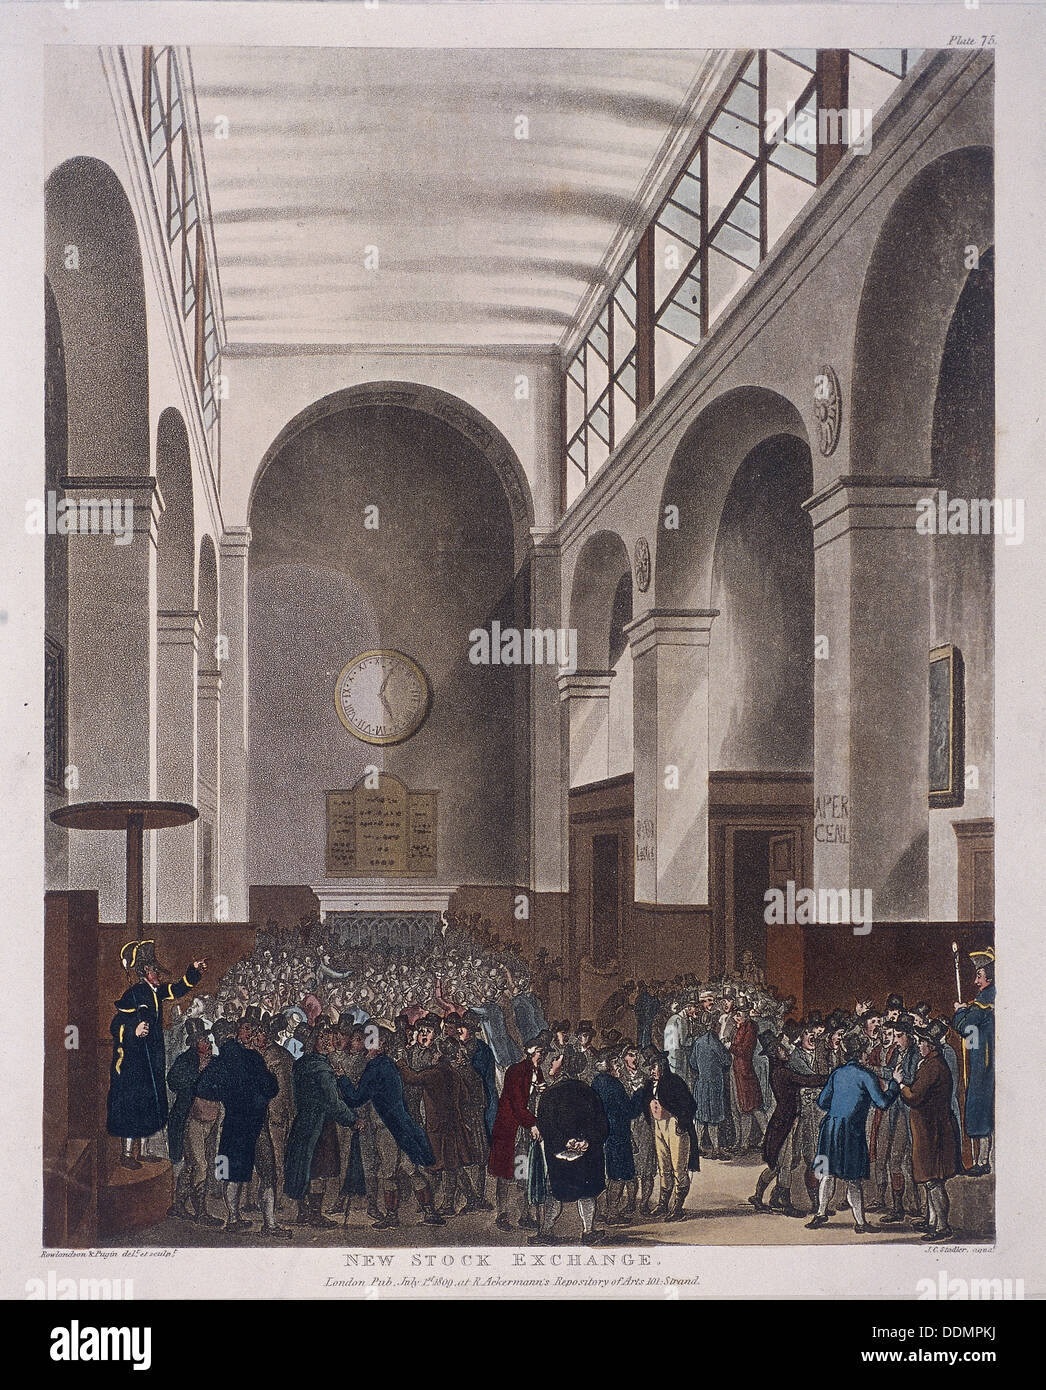 Stock Exchange, Bartholomew Lane, London, 1809. Artist: Joseph Constantine Stadler Stock Photo